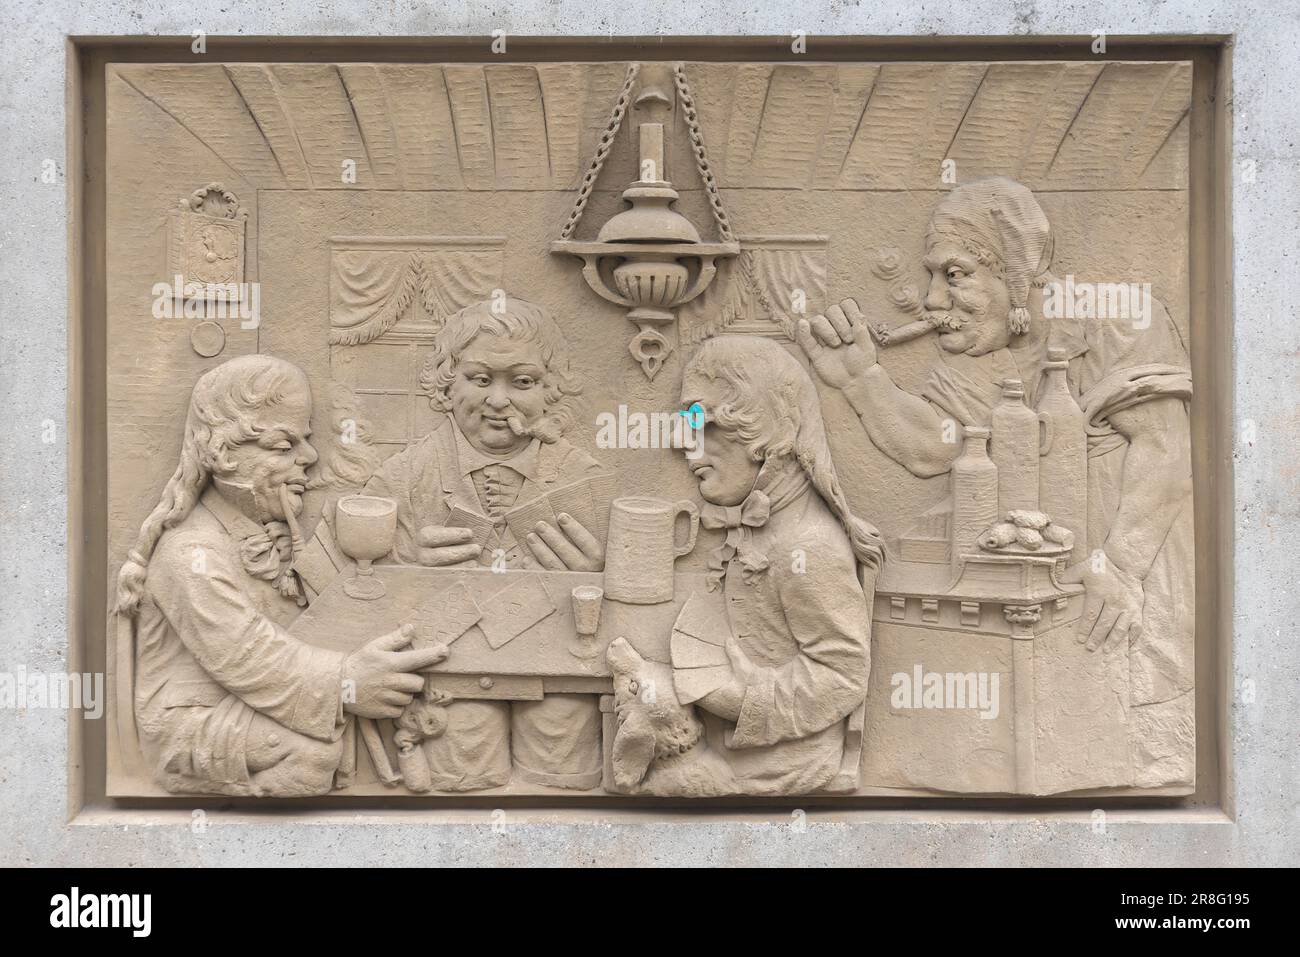 Sandstein Relief, The Good Old Days, c. 1912, Altstadt, Rheinstraße, Koblenz, Rheiunland-Pfalz, Deutschland Stockfoto